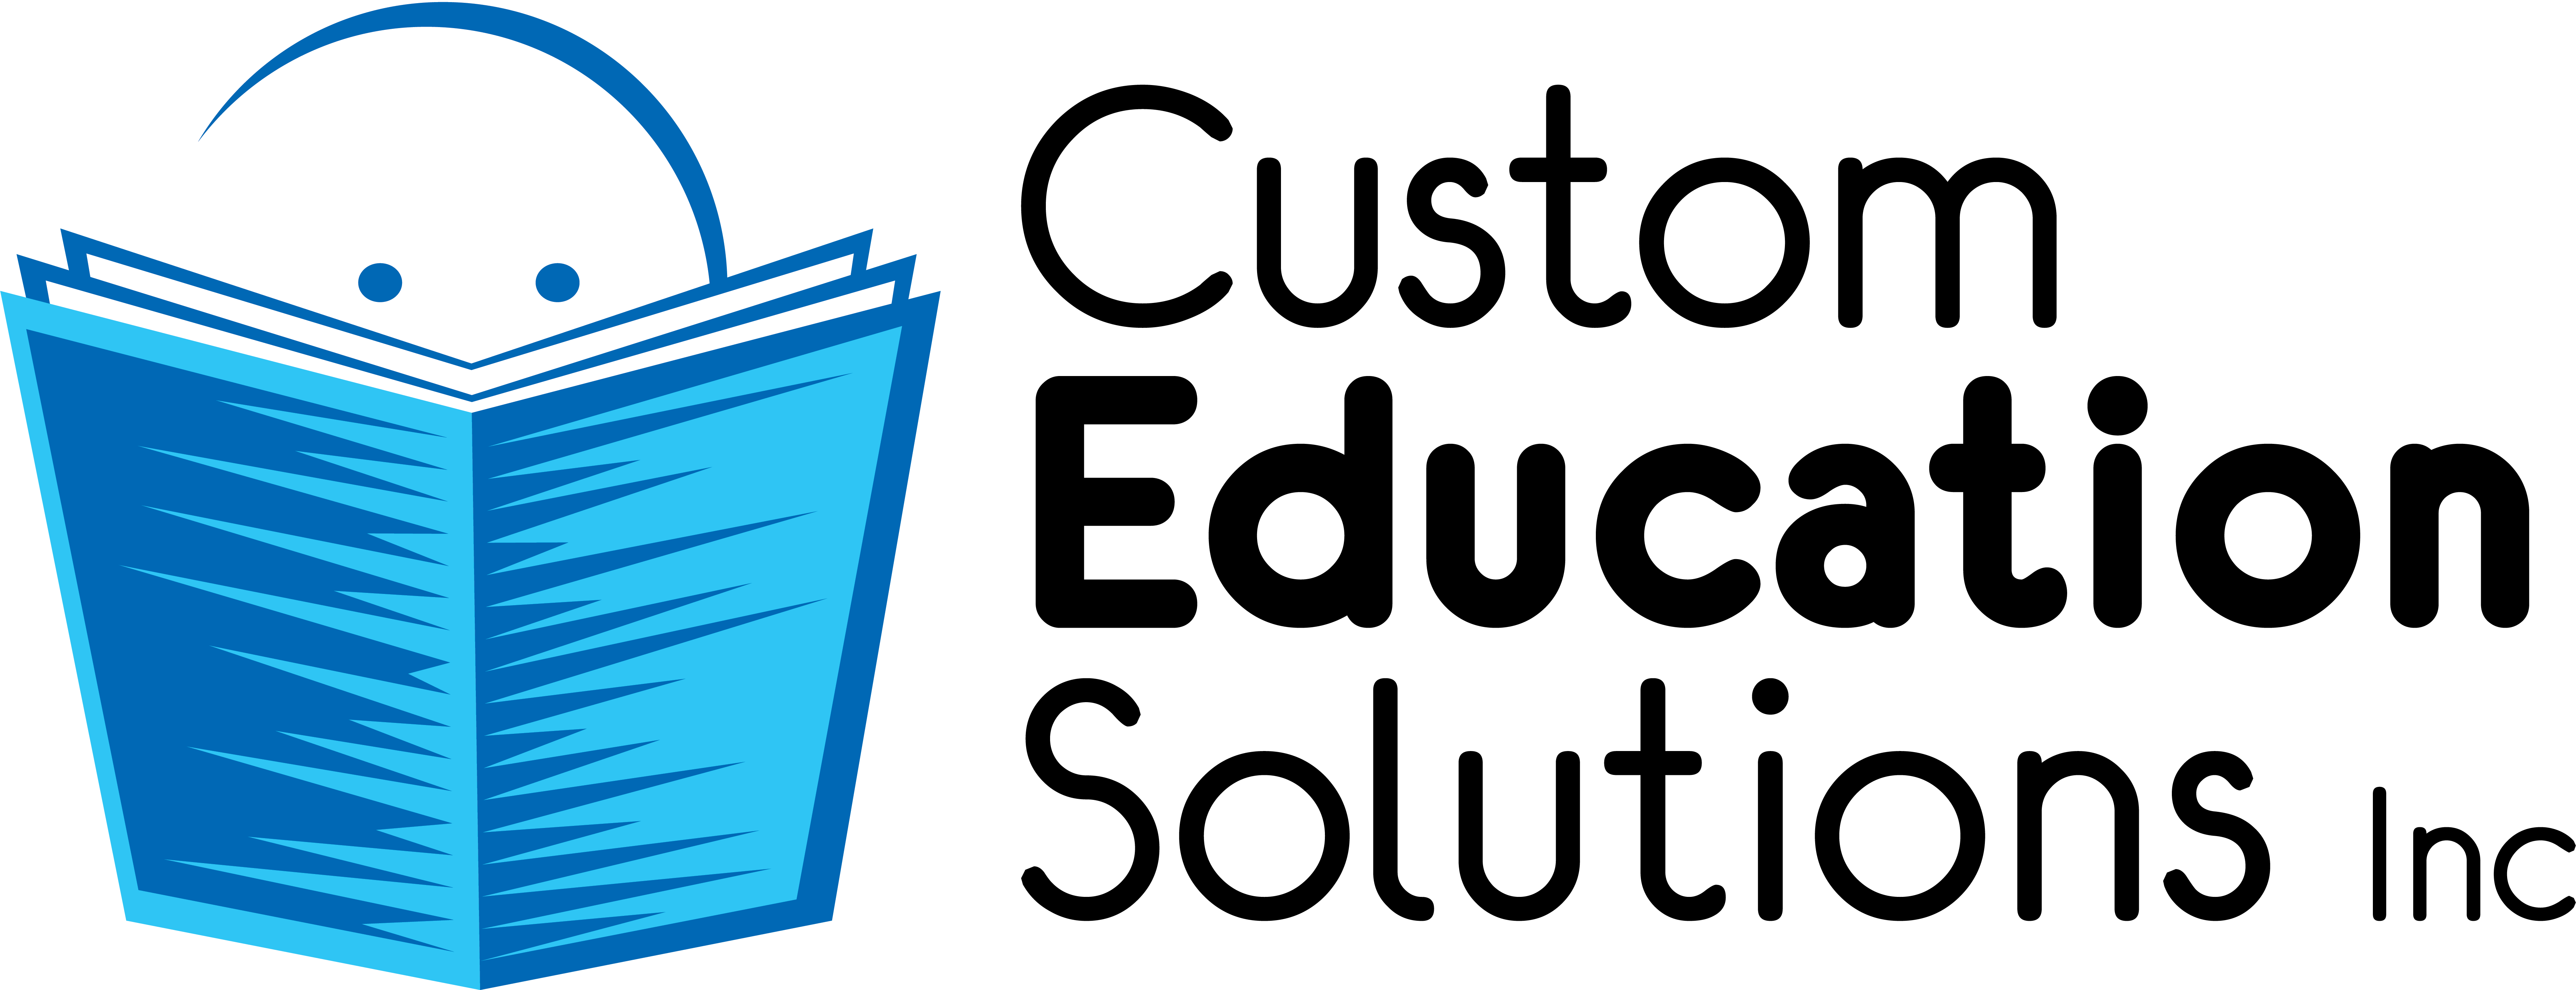 Custom Education Solutions logo